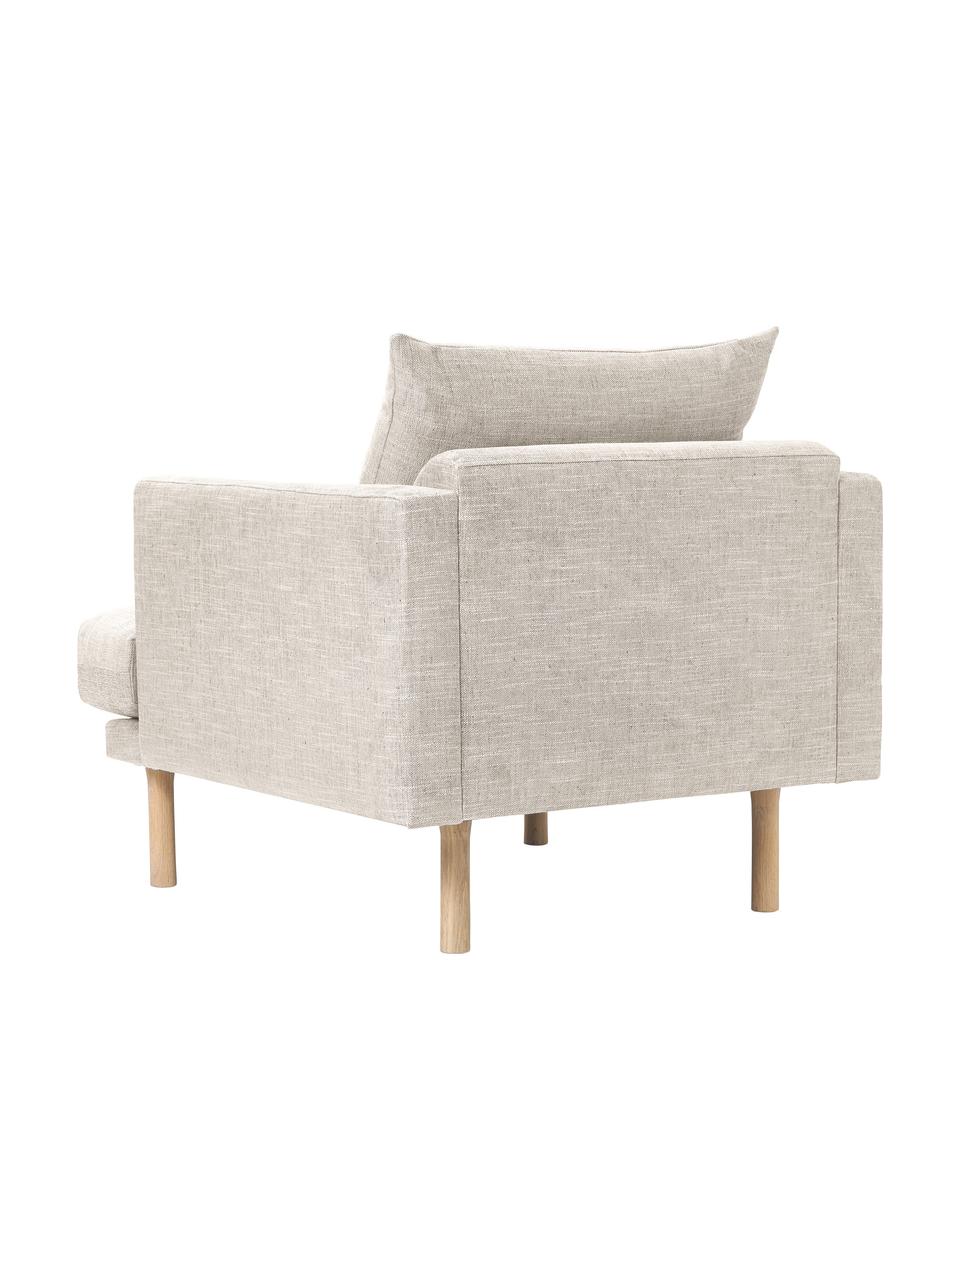 Sofa-Sessel Adrian, Bezug: 47 % Viskose, 23 % Baumwo, Gestell: Sperrholz, Füße: Eichenholz, geölt, Webstoff Beige, B 90 x H 79 cm